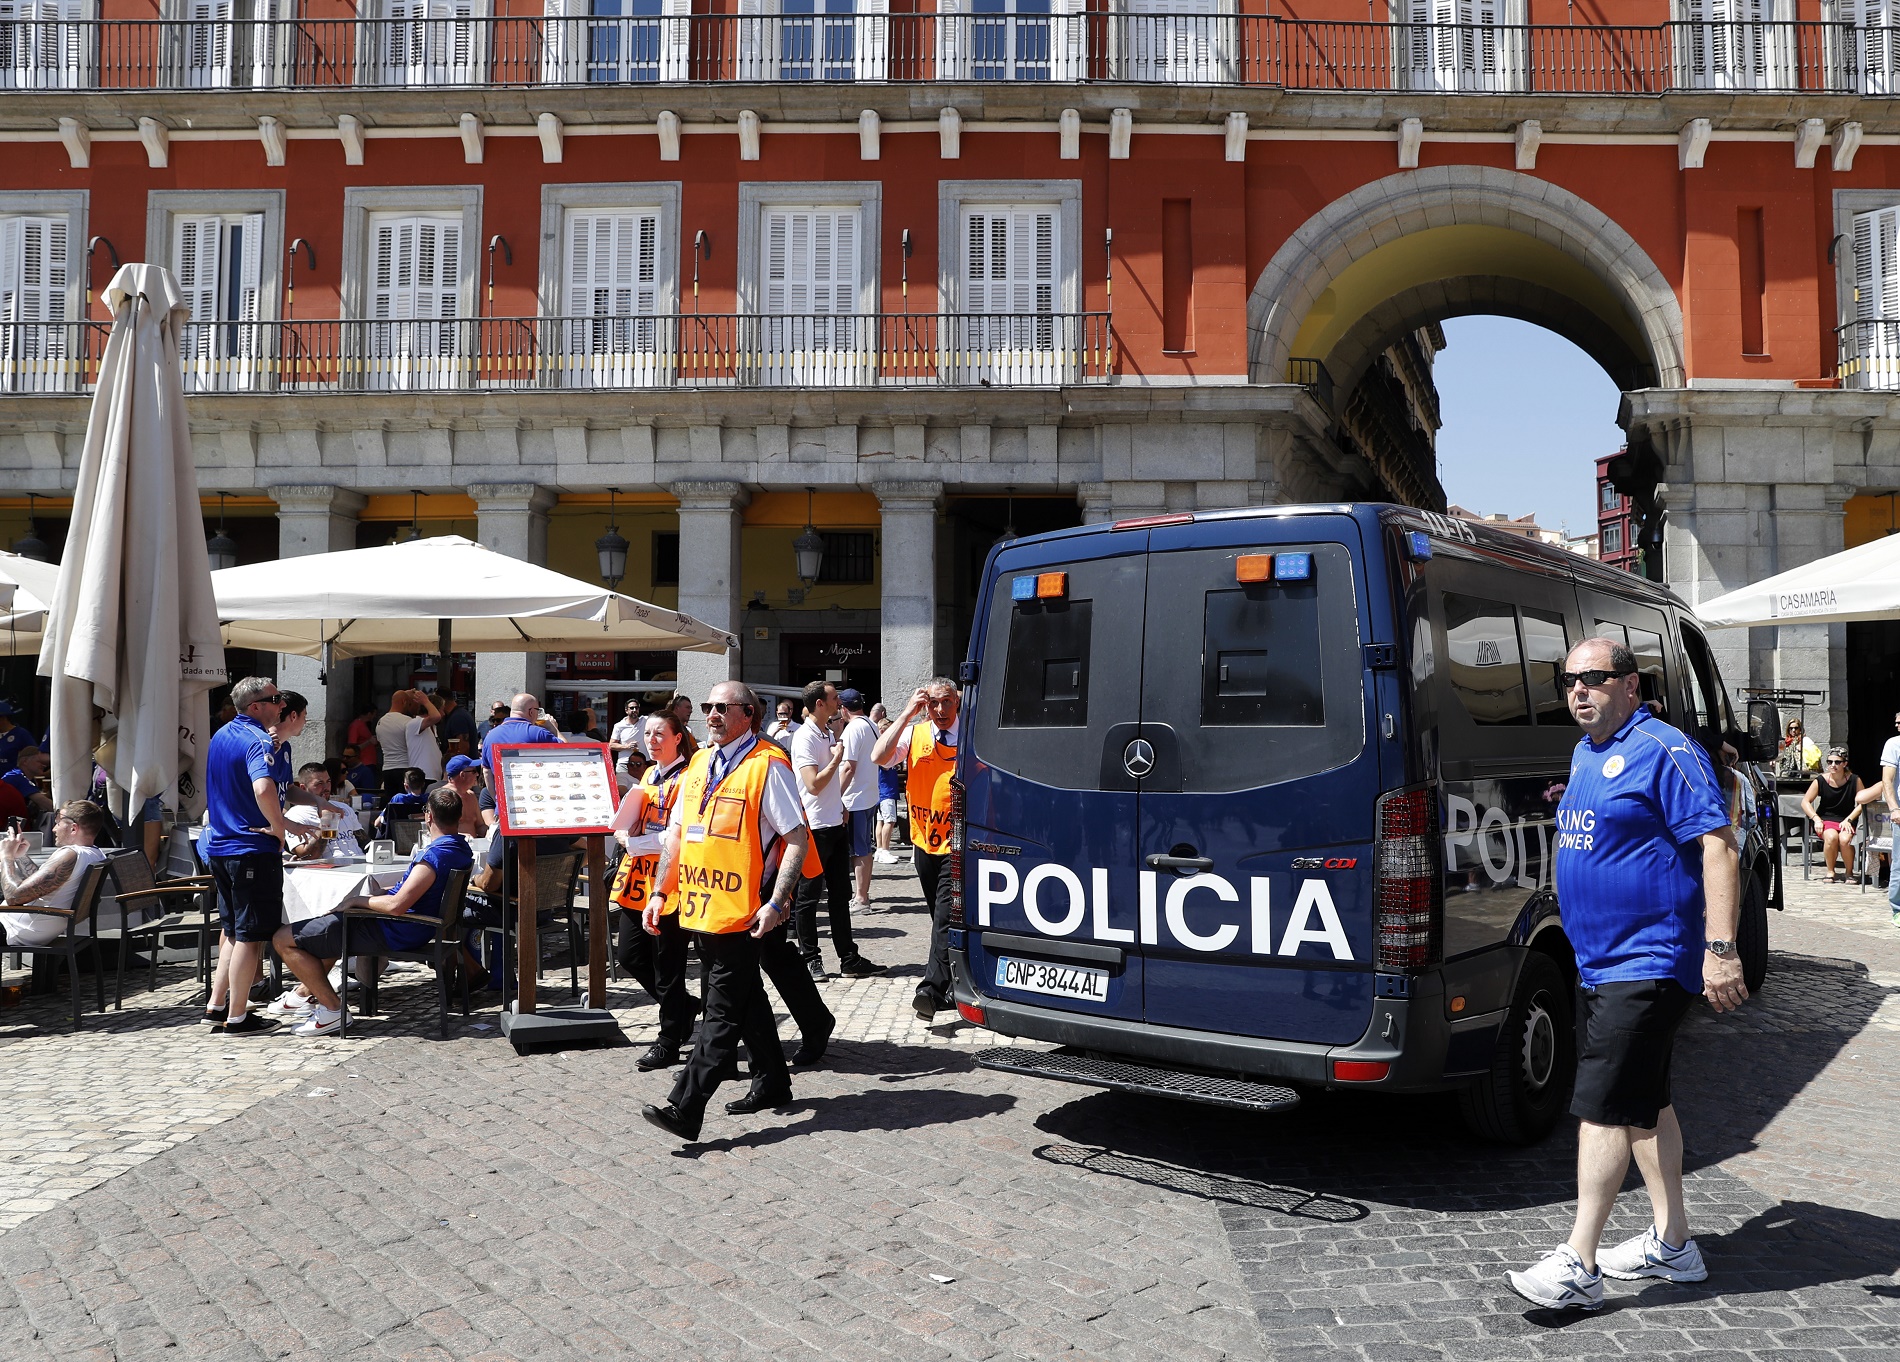 Diez hinchas del Leicester son detenidos en Madrid por desorden público